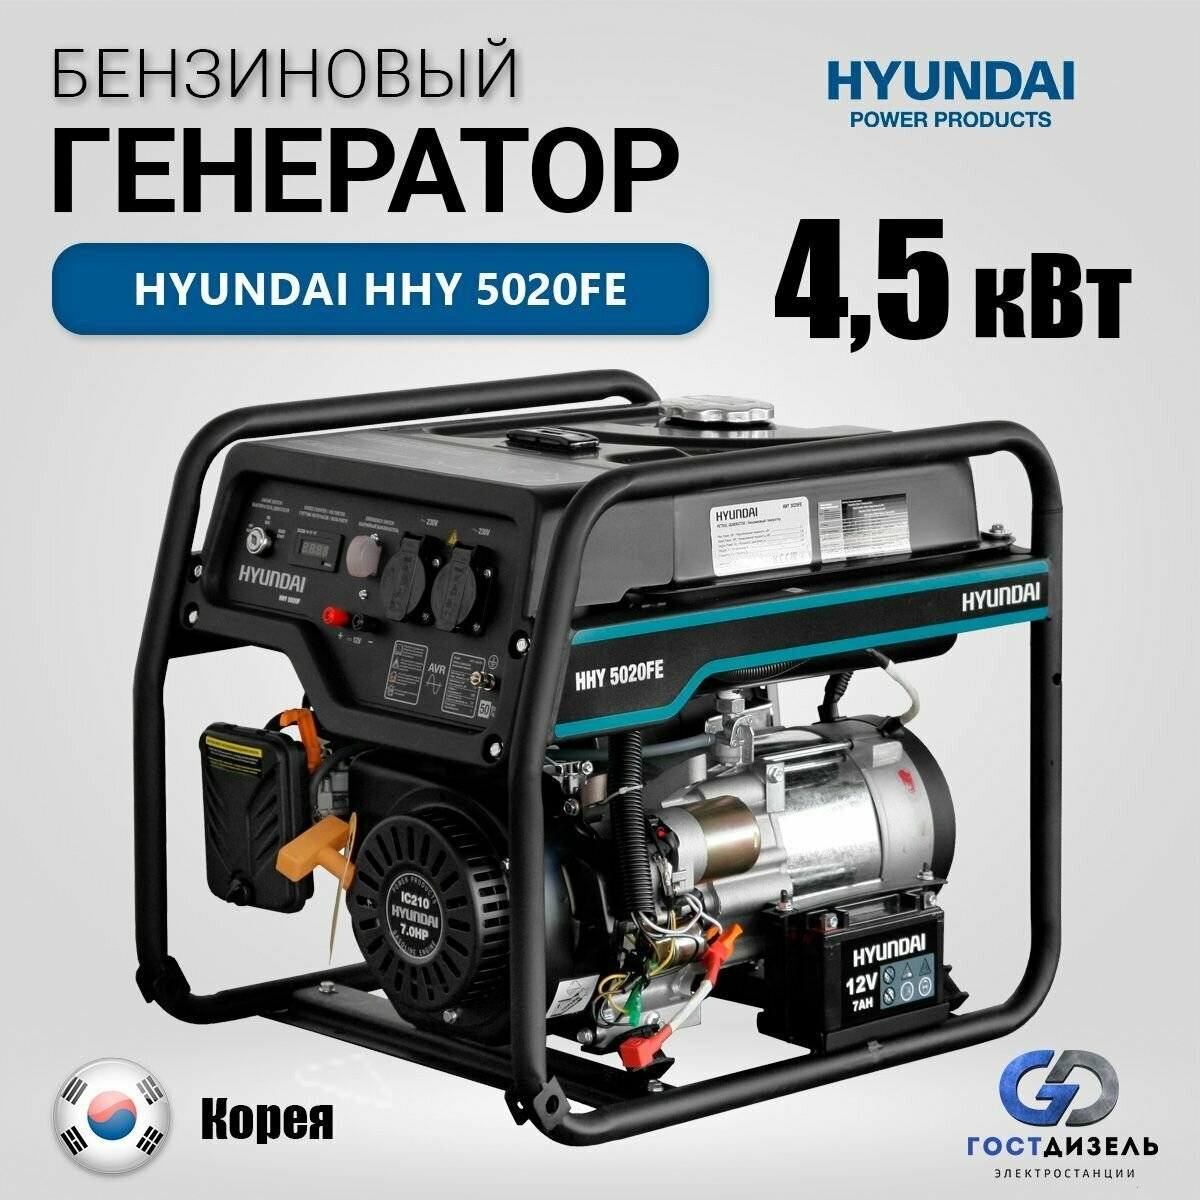 Бензиновый генератор HYUNDAI HHY 5020FE (4500 Вт)